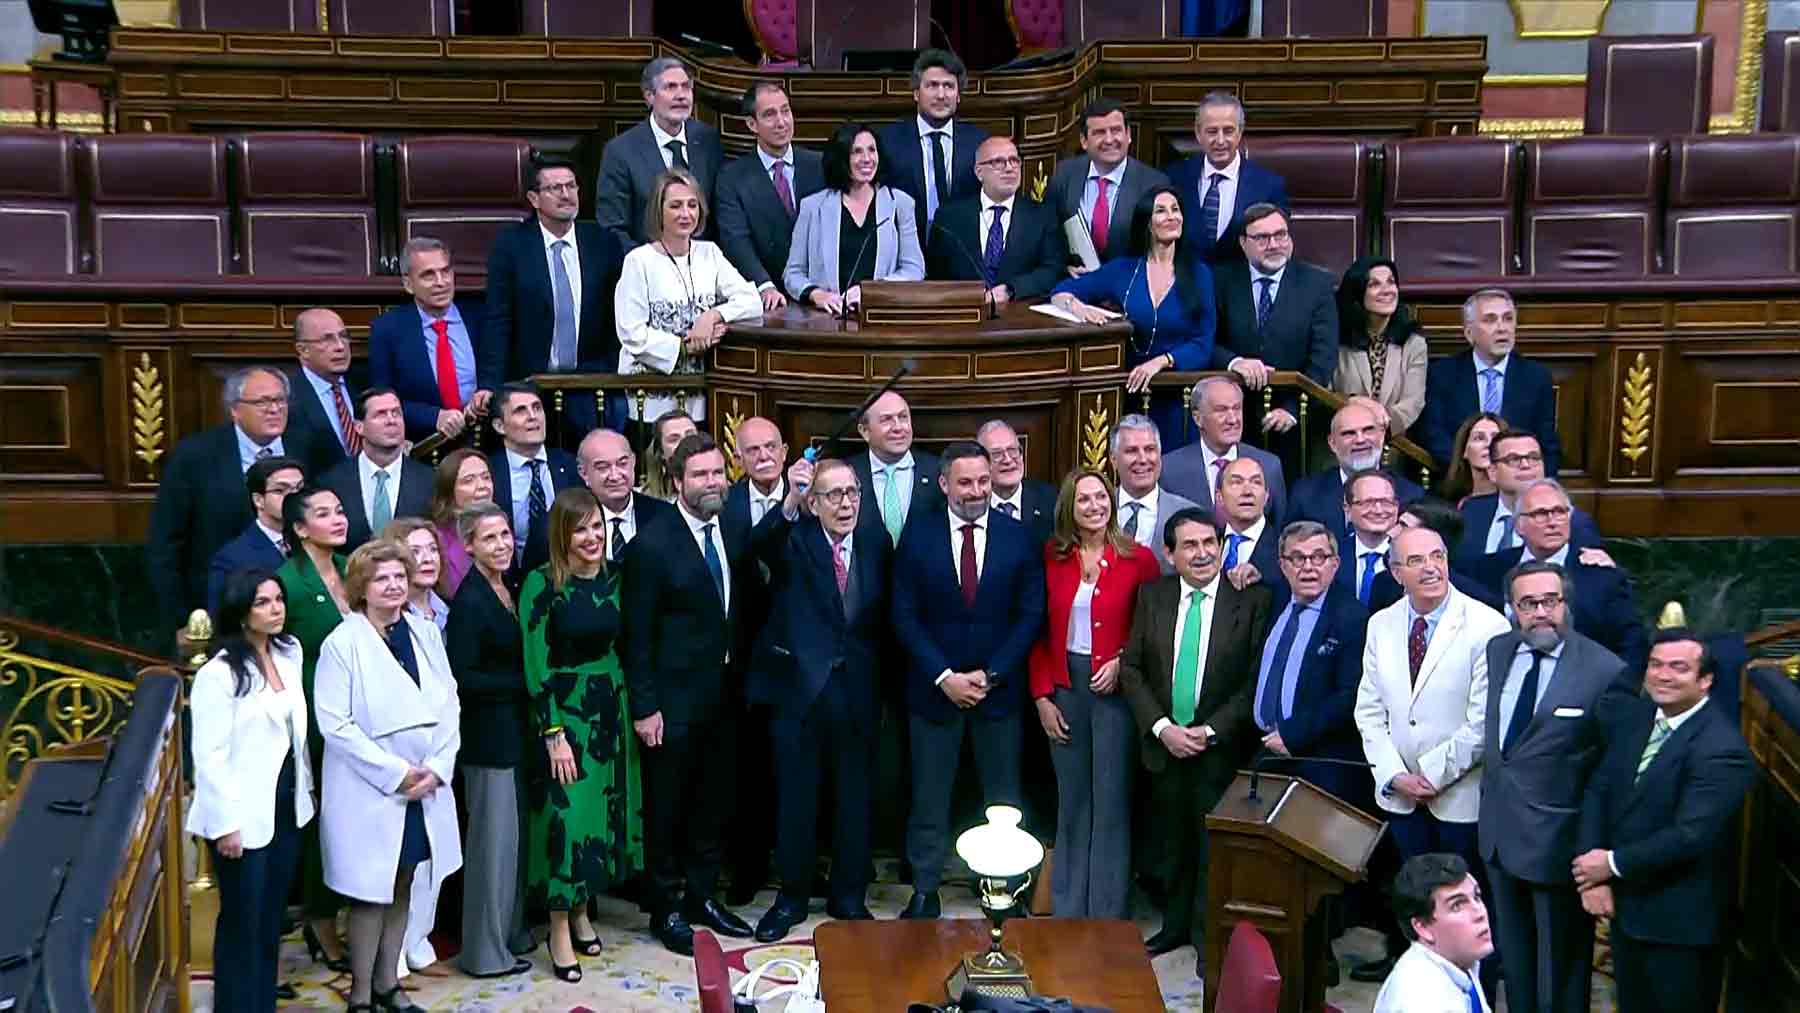 Vox posa junto a Ramón Tamames en el Congreso de los Diputados